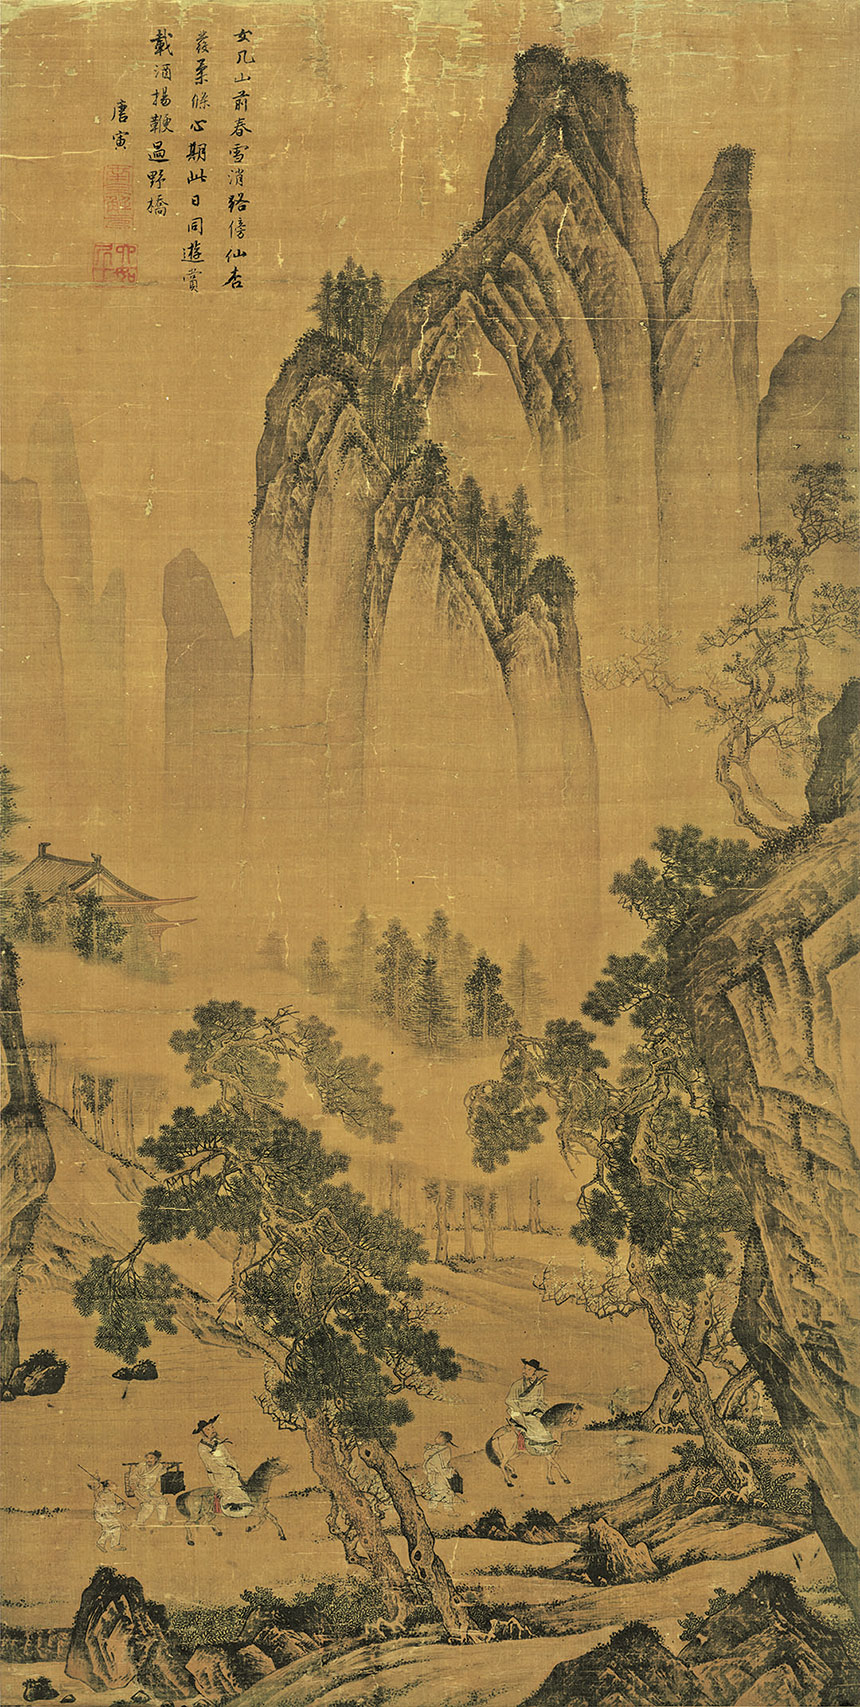 [明] 唐寅《松林扬鞭图》

绢本 立轴 设色 145.3x72.5 厘米

旅顺博物馆藏